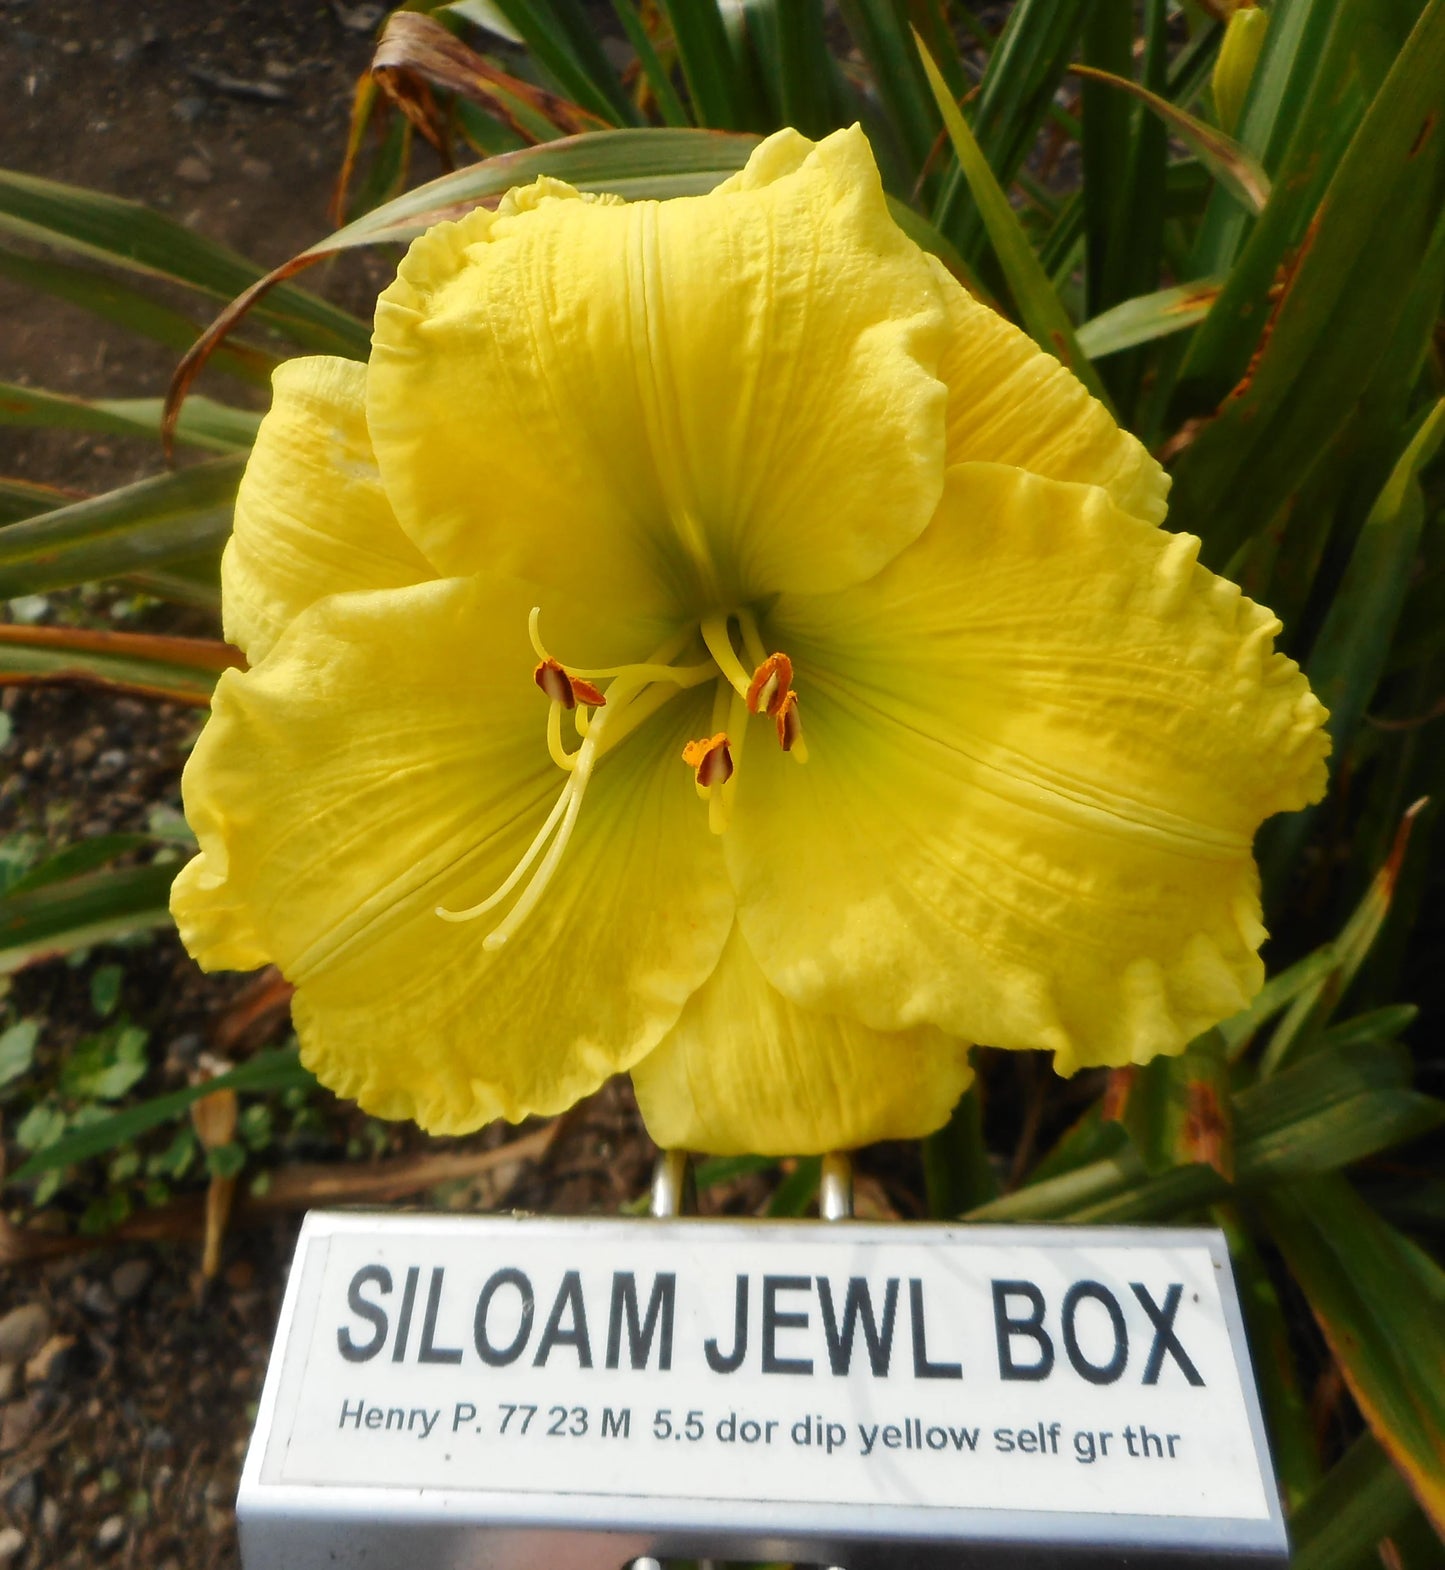 SILOAM JEWL BOX